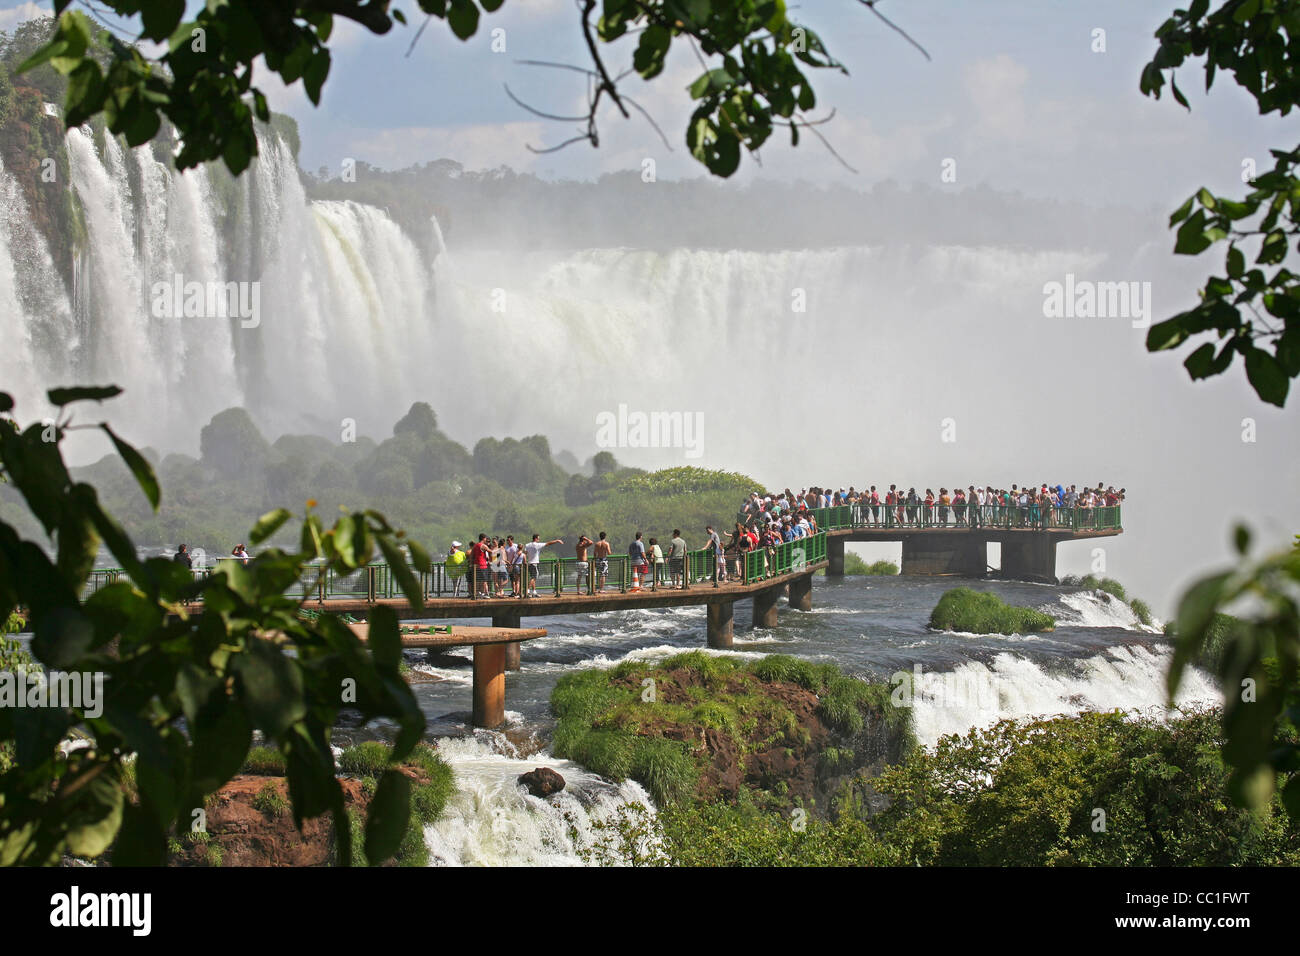 Les touristes dans le passage libre à l'Iguazu Falls / Iguassu Falls / Chutes d'Iguaçu, à la frontière du Brésil et l'Argentine Banque D'Images